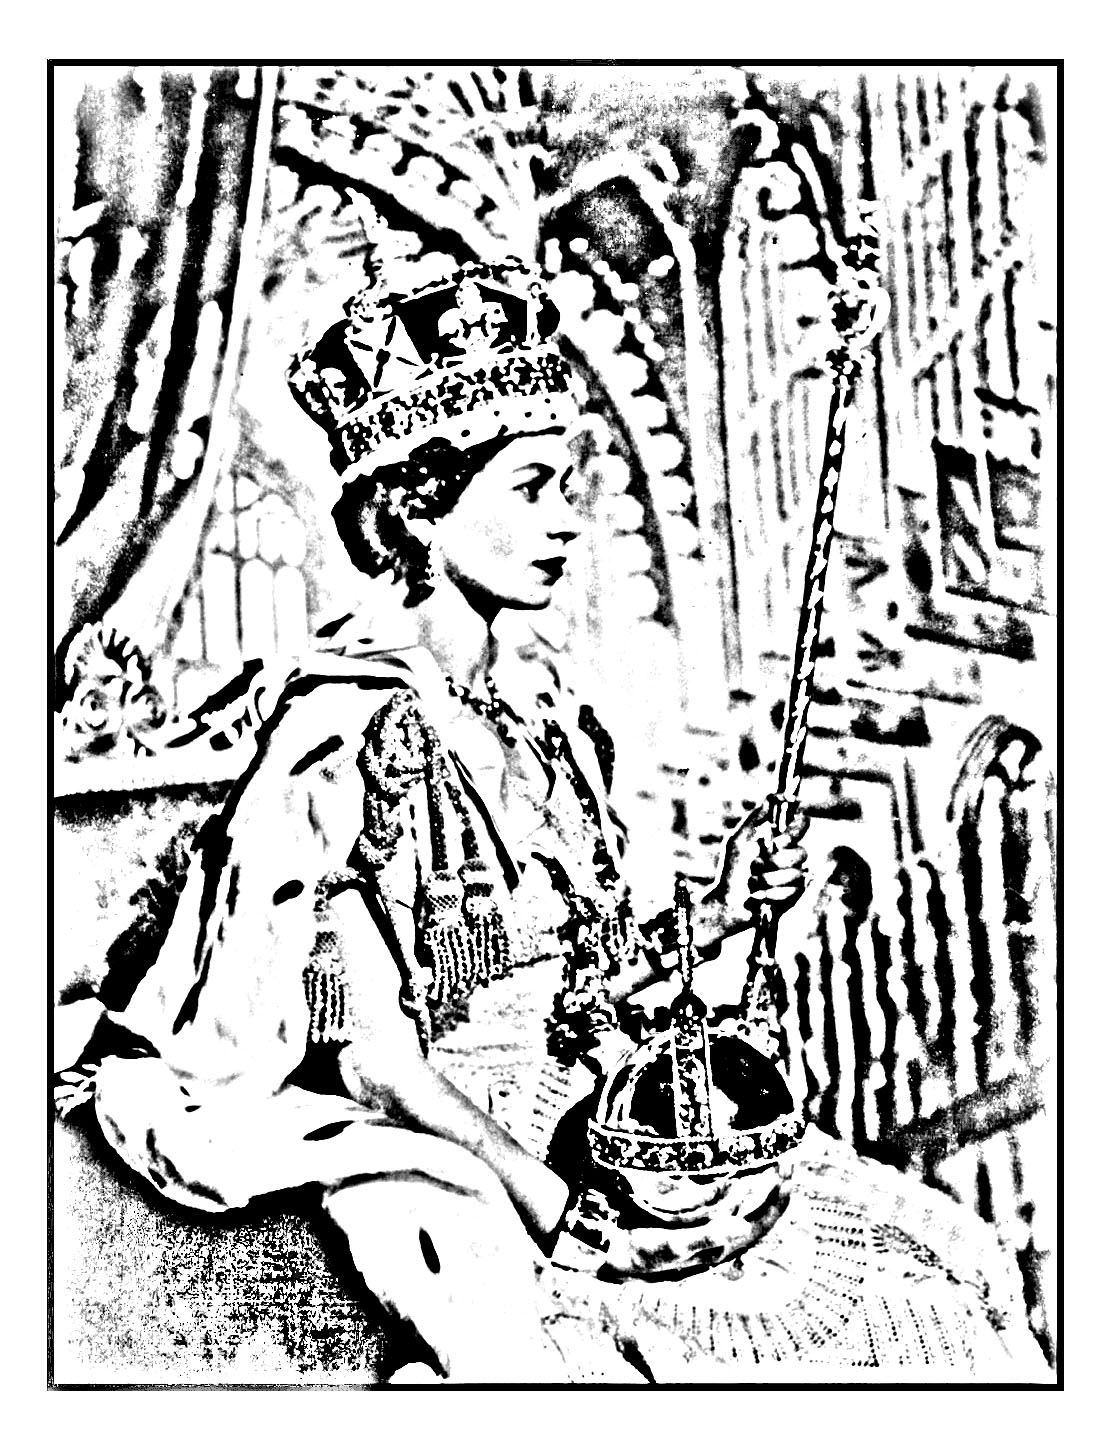 Coloriage créé à partir d'une photographie officielle prise lors du couronnement de la Reine Elisabeth II en 1953 (vue de profil)